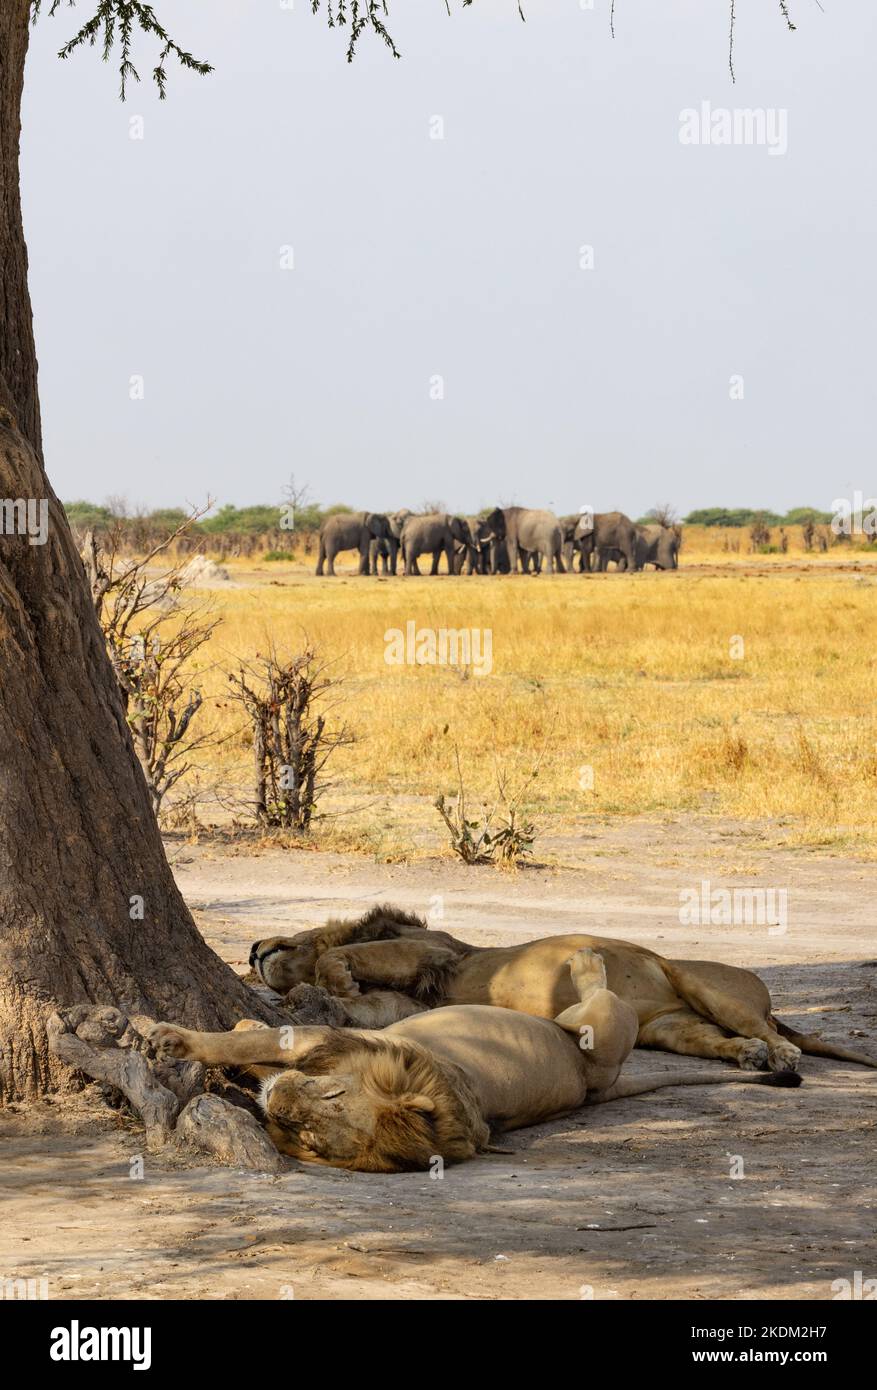 Scène des animaux d'Afrique; deux lions mâles se reposant sous un arbre, avec des éléphants en arrière-plan; parc national de Chobe, Botswana Afrique. Paysage africain. Banque D'Images